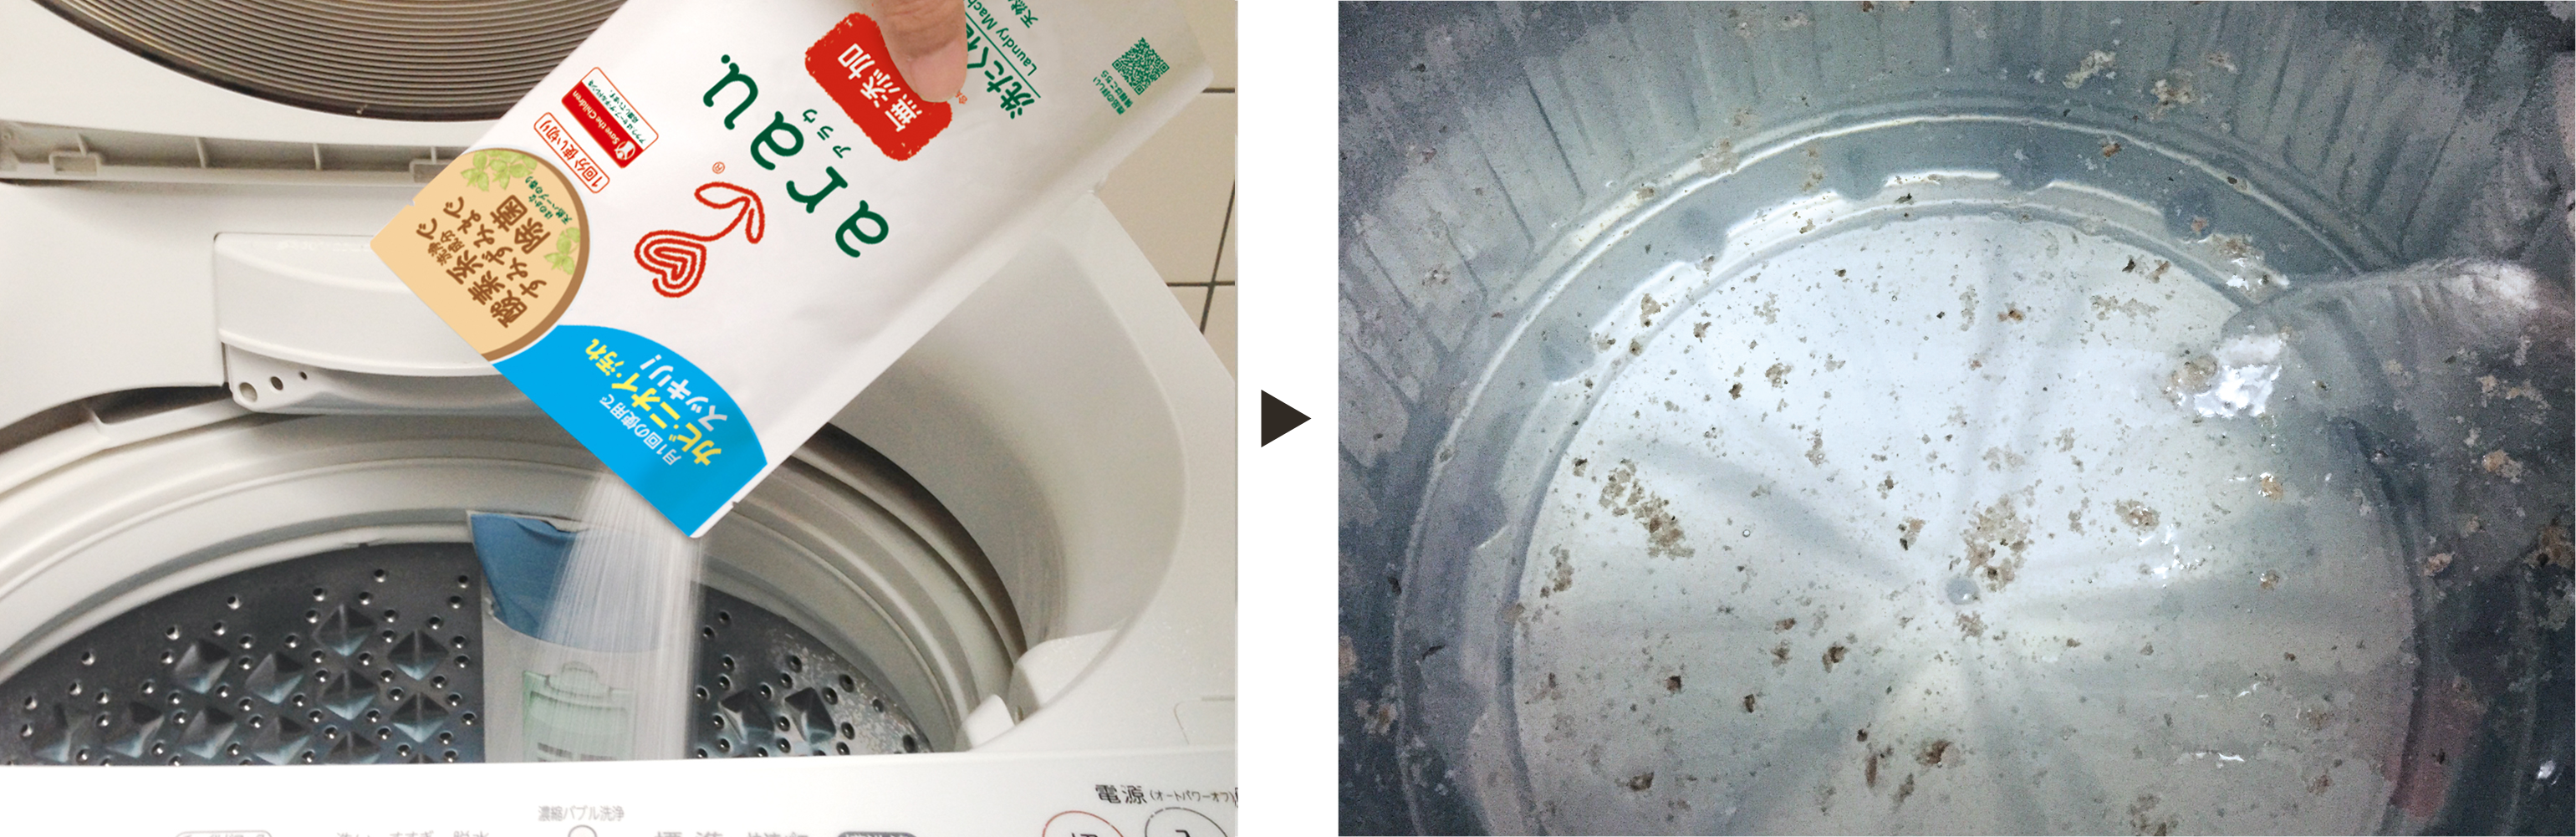 愛樂寶 arau  無添加 洗衣機清潔劑 洗衣機黴菌 洗衣機髒 活氧潔淨 過碳酸鈉